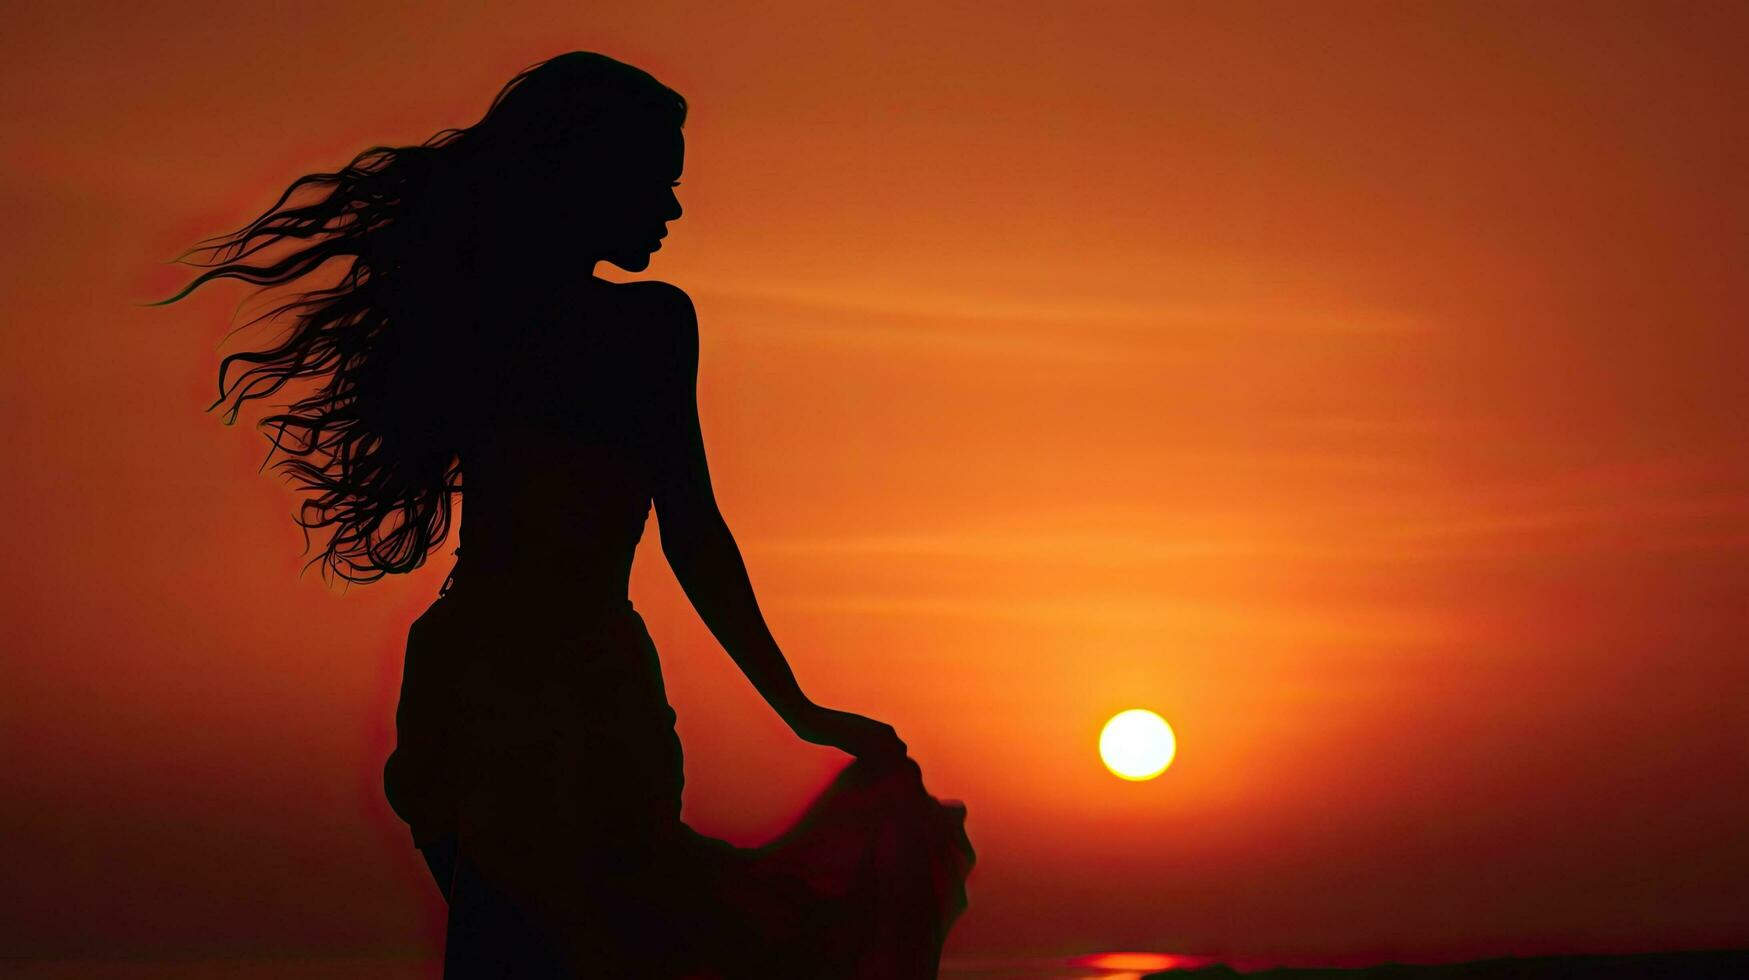 apprezzando il tramonto donna S silhouette a crepuscolo foto